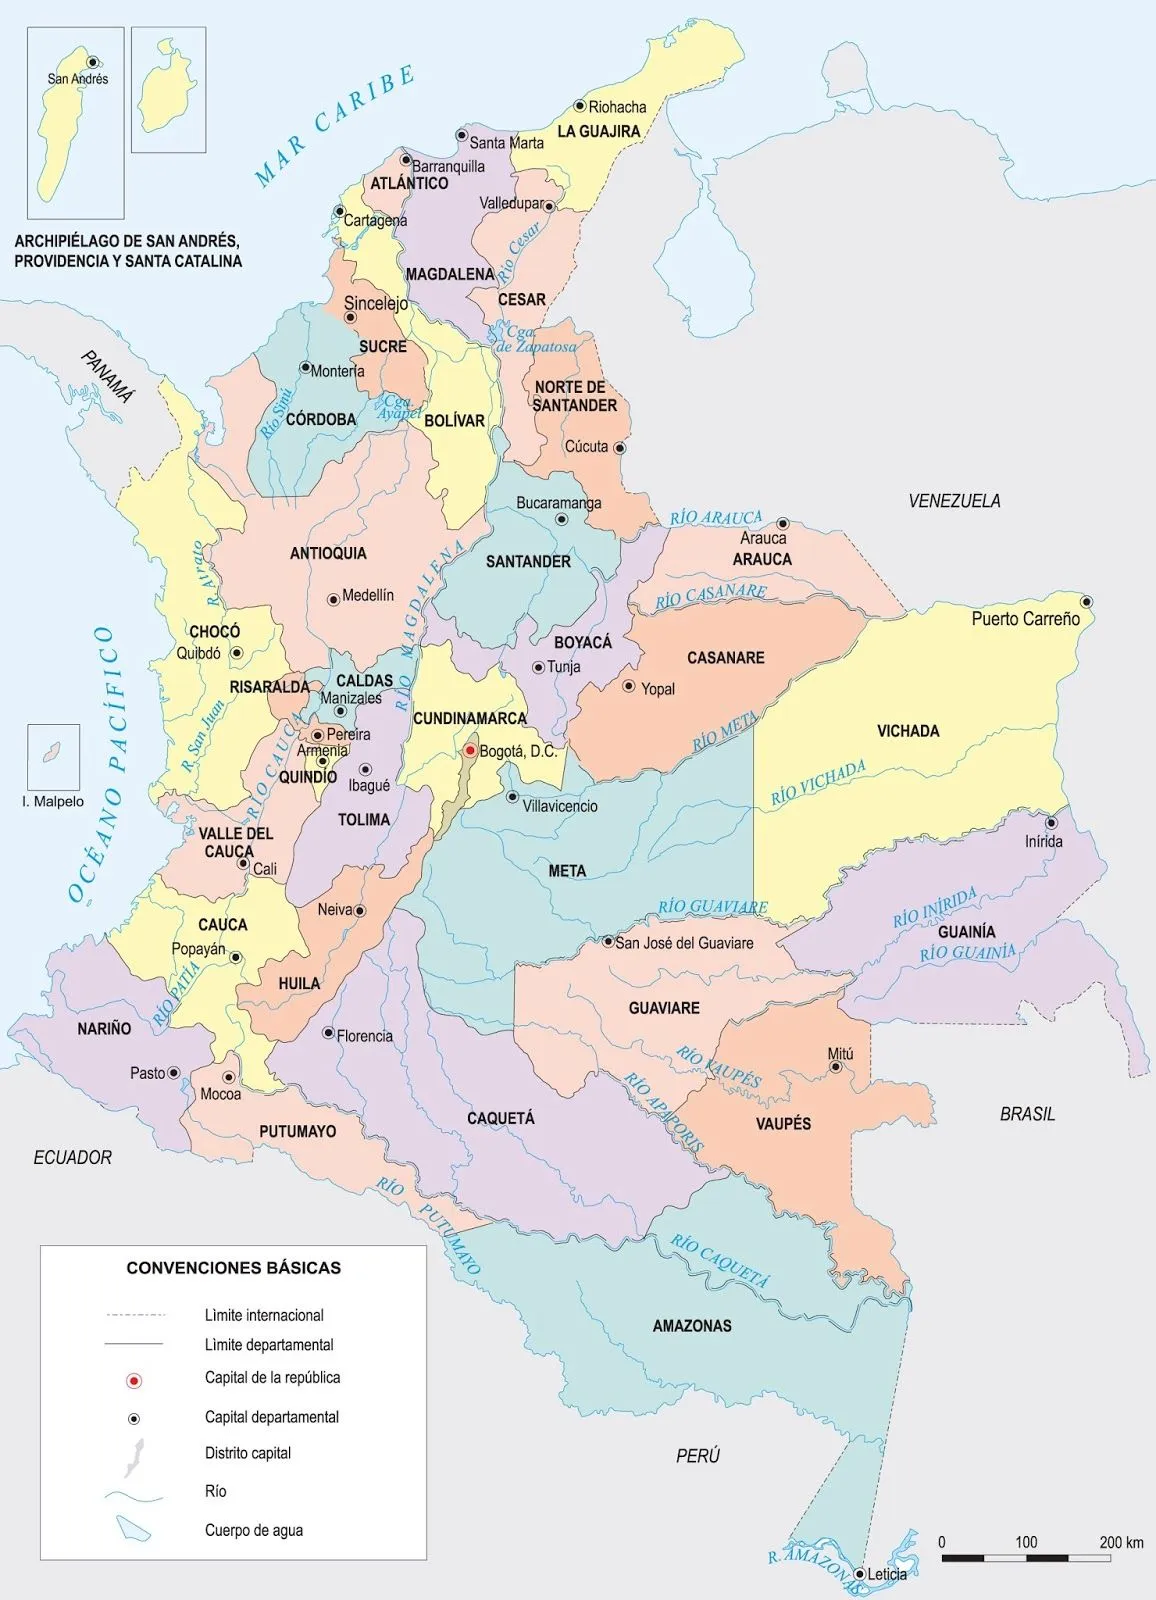 Mapa de colombia con departamentos y capitales - Imagui